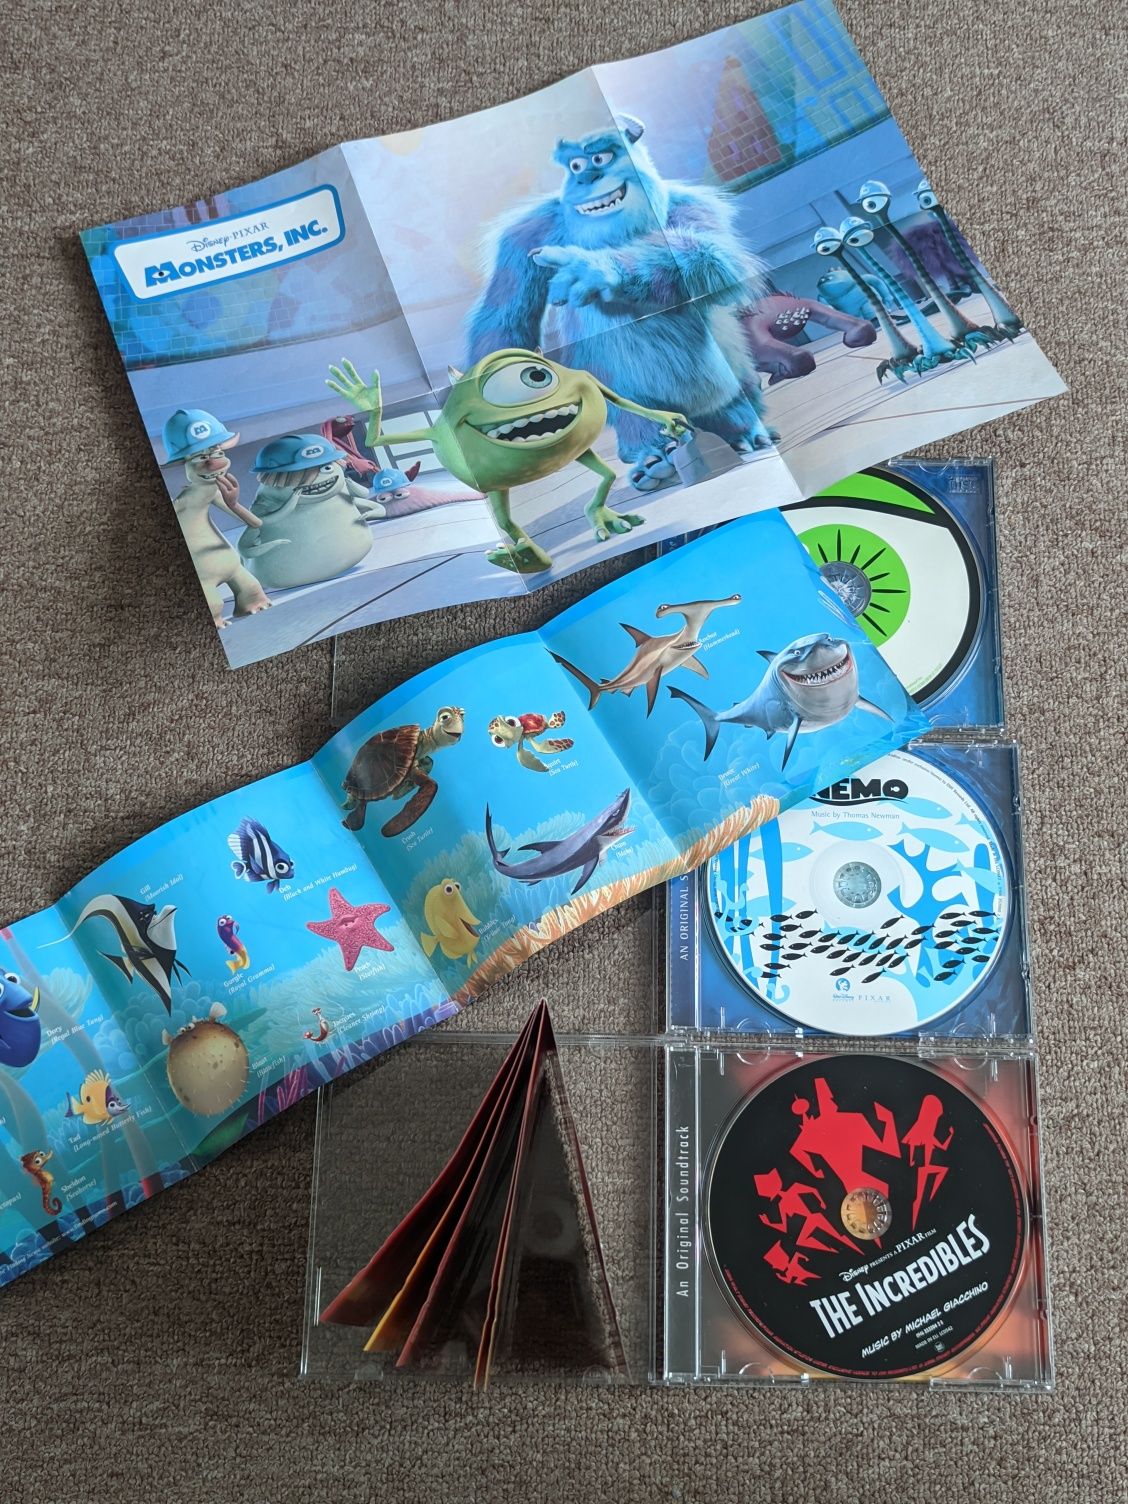 Фирменный CD саундтрек Finding Nemo The Incredibles Monster Inc